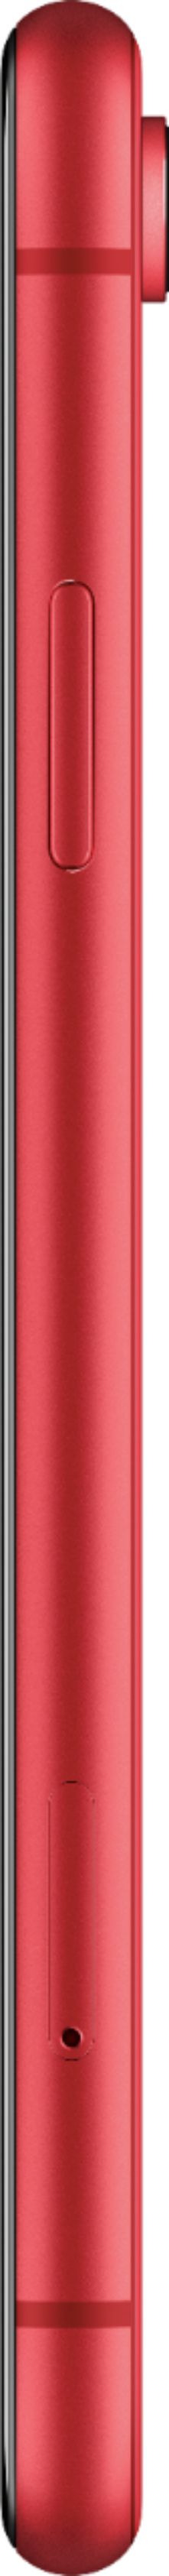 スマートフォン/携帯電話 スマートフォン本体 Best Buy: Apple iPhone XR 64GB (PRODUCT)RED™ (Verizon) MRYU2LL/A